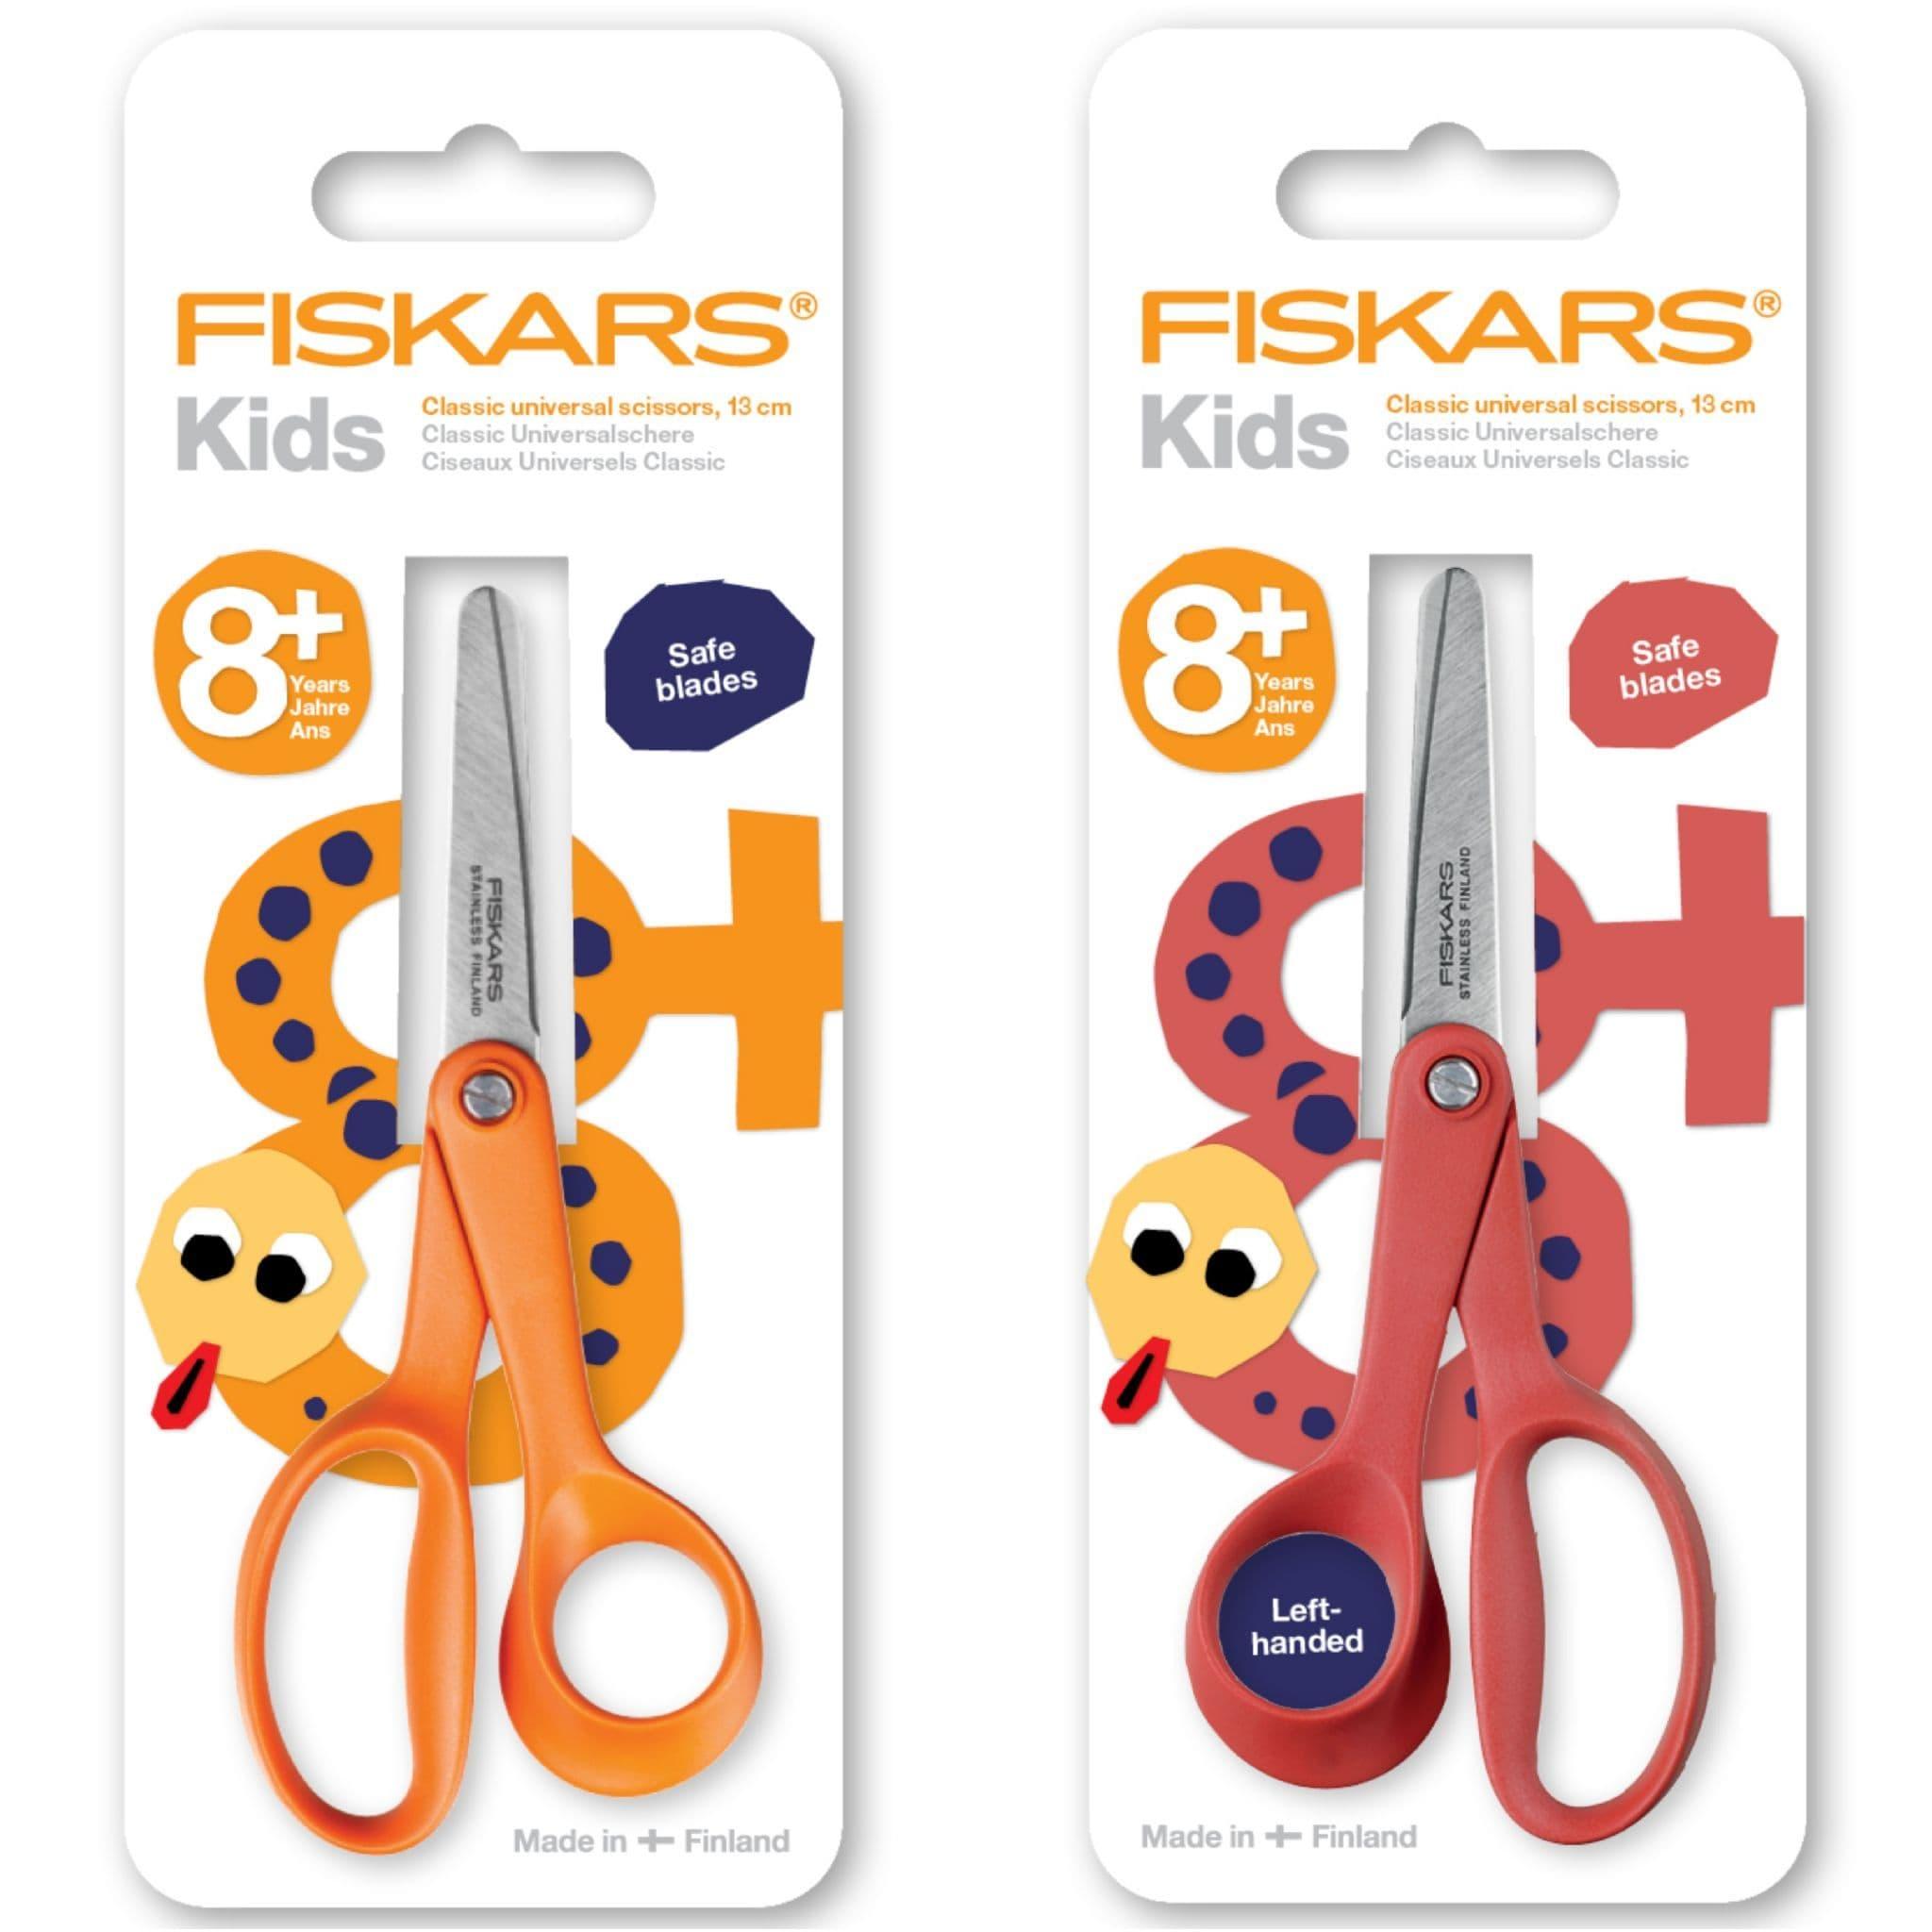 https://cdn.ecommercedns.uk/files/3/252923/4/28121574/fiskars-kids-classic-universal-scissors-13cm-age-8-left-or-right.jpg